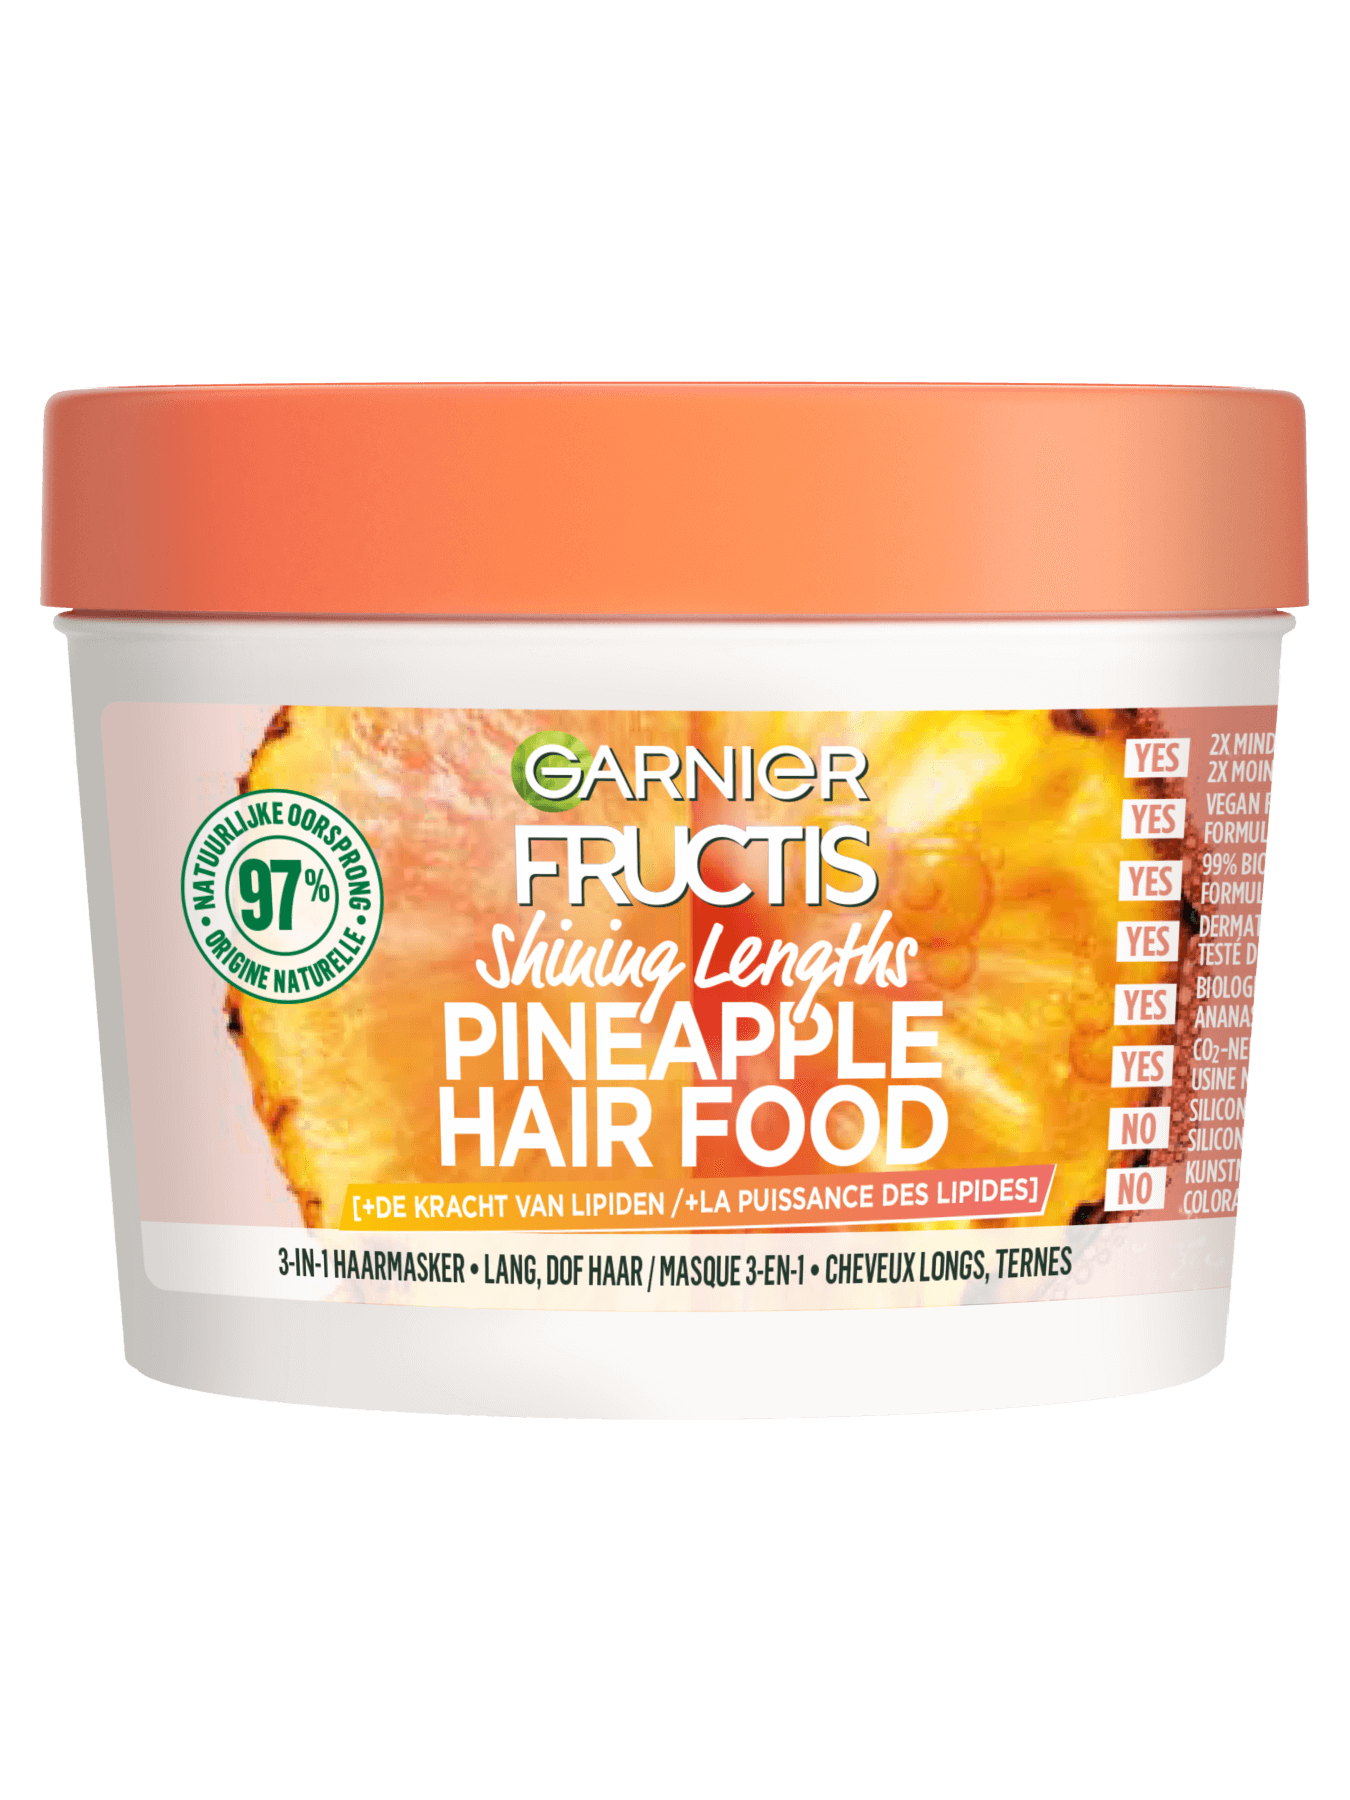 GAR Haircare Fructis Hairfood Mask Pineapple B350 pack front 23jpg